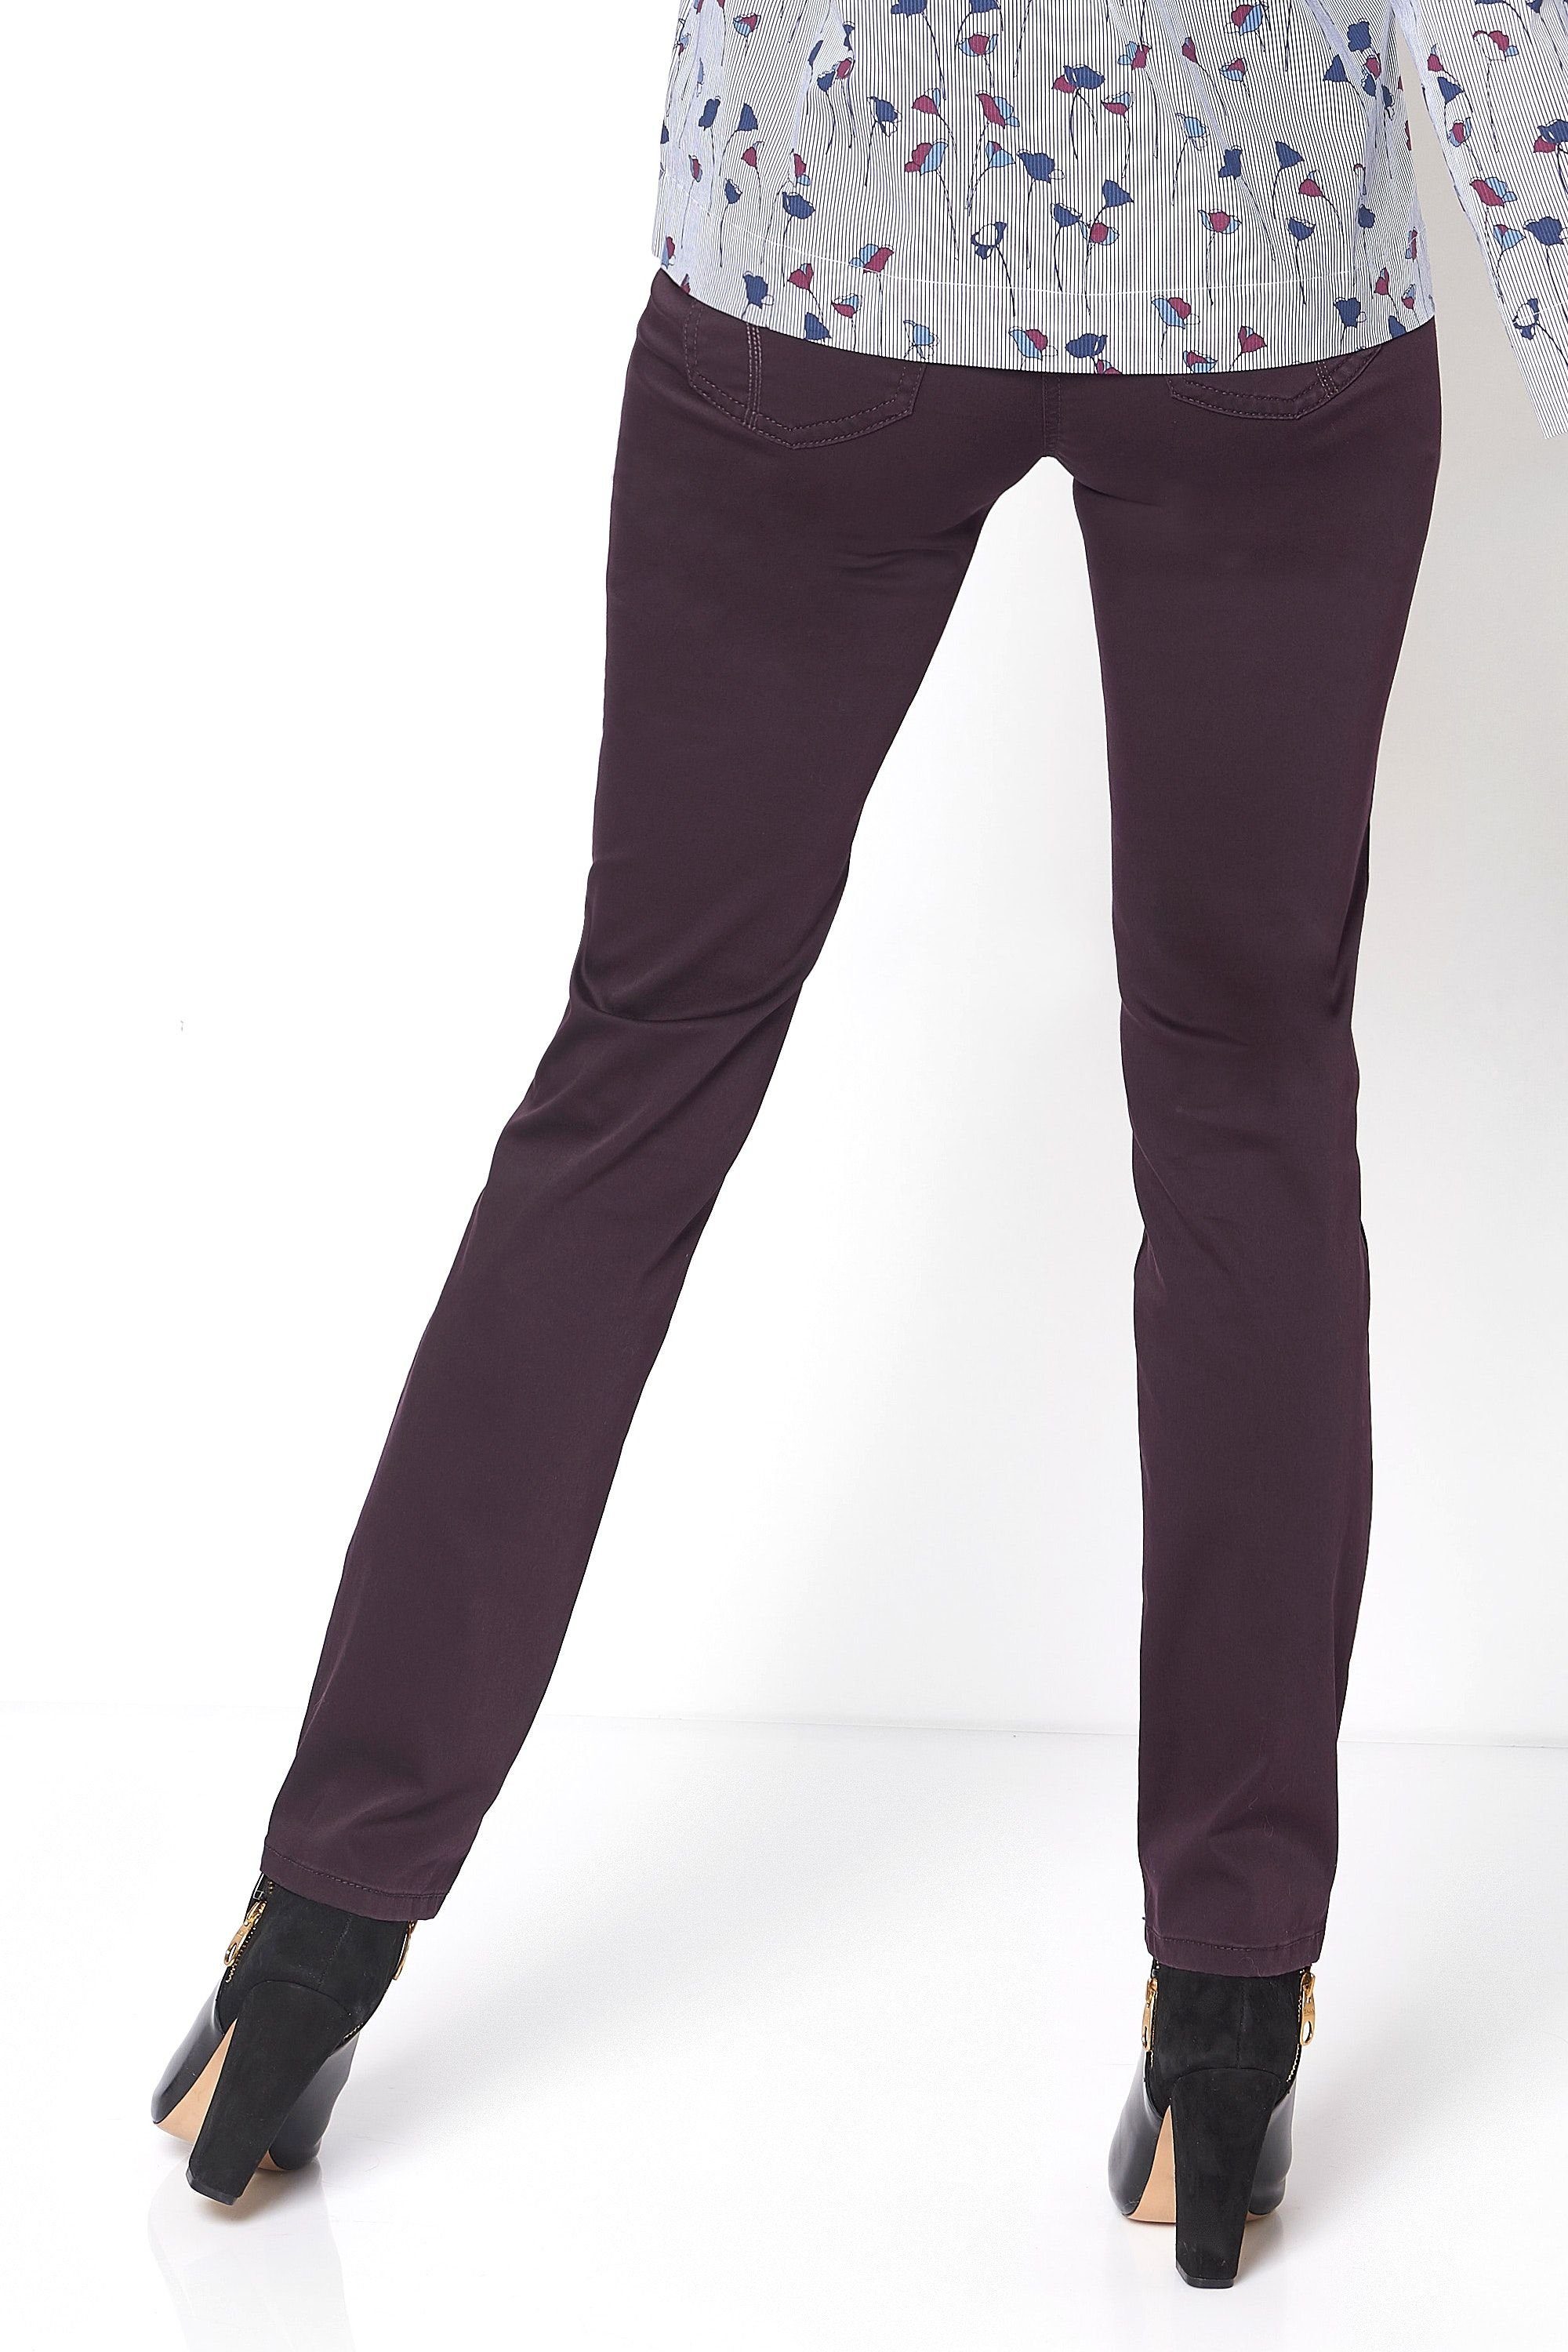 plum 5-Pocket-Jeans TONI